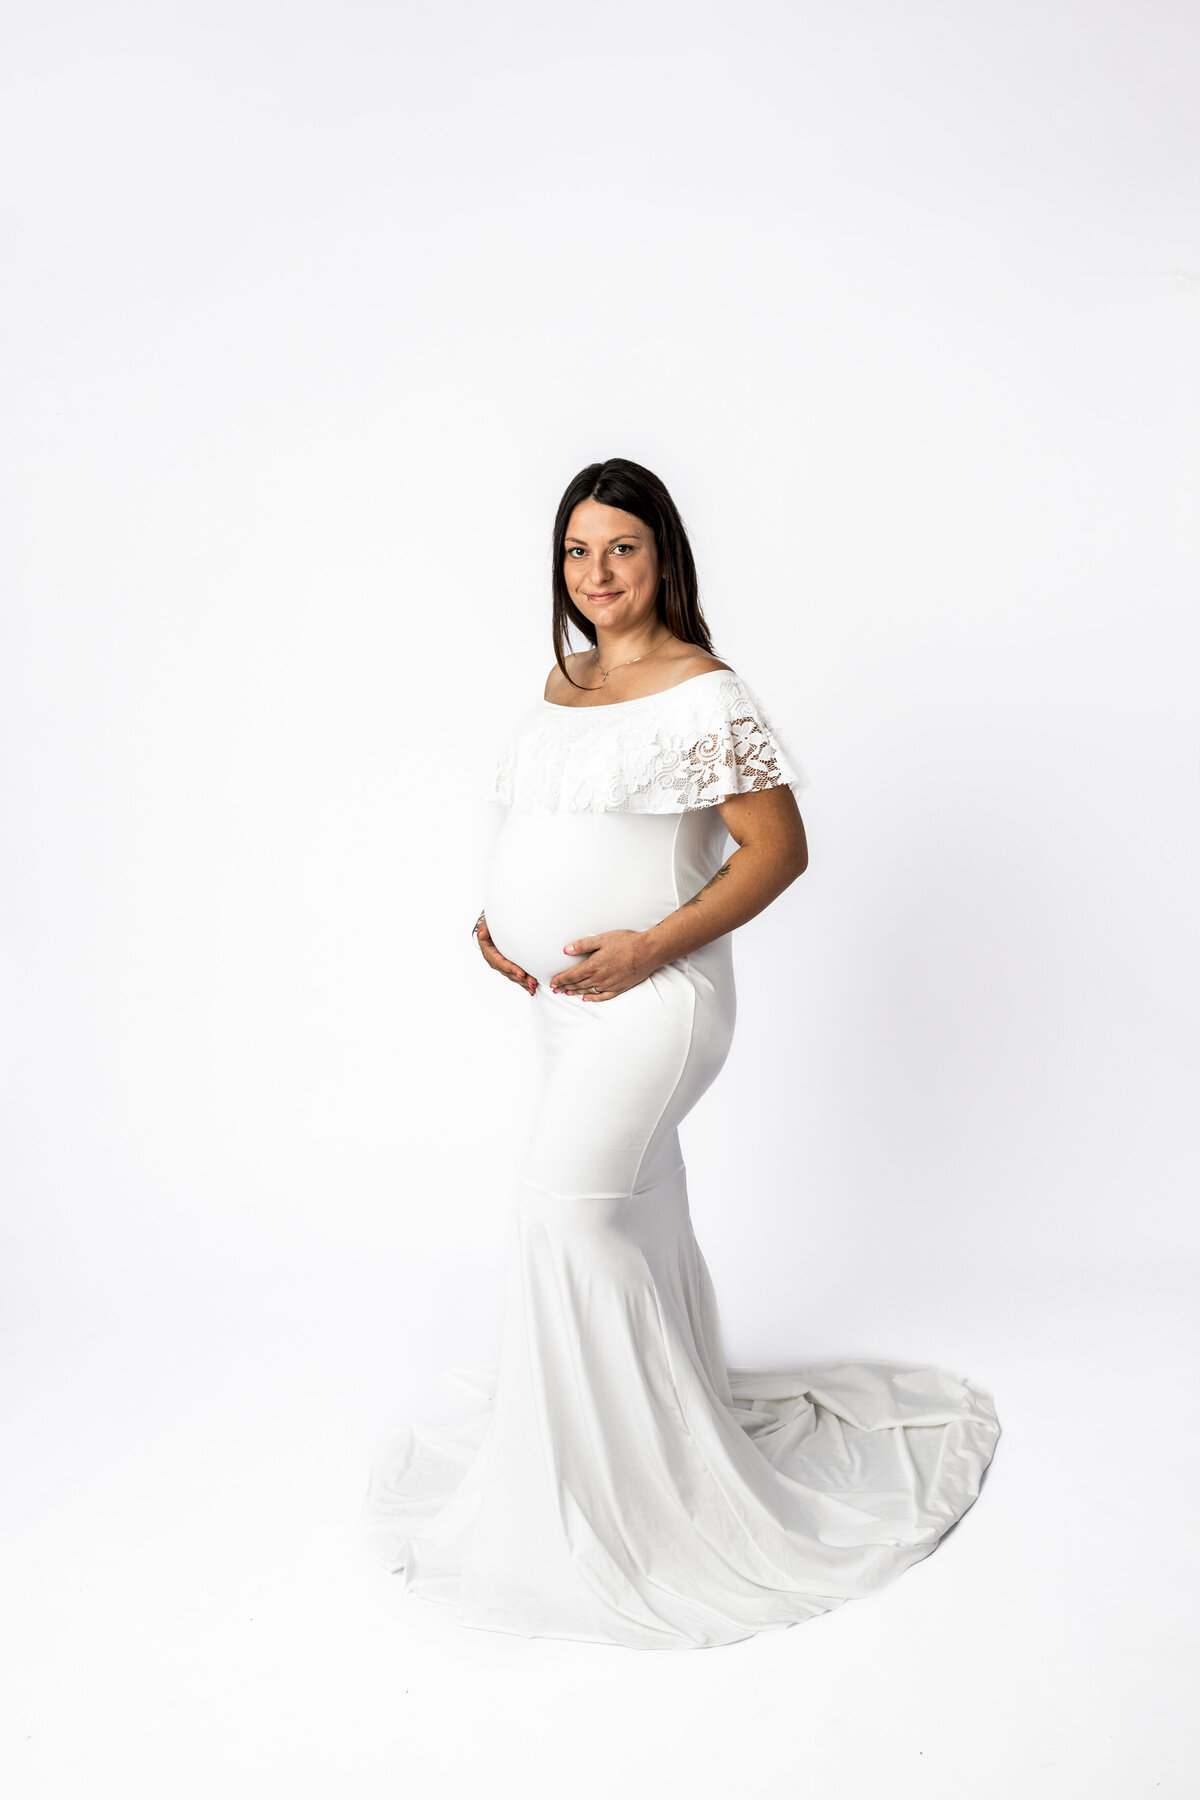 Hobart-Maternity-Baby-Photographer-Lauren-Vanier-Photography-30